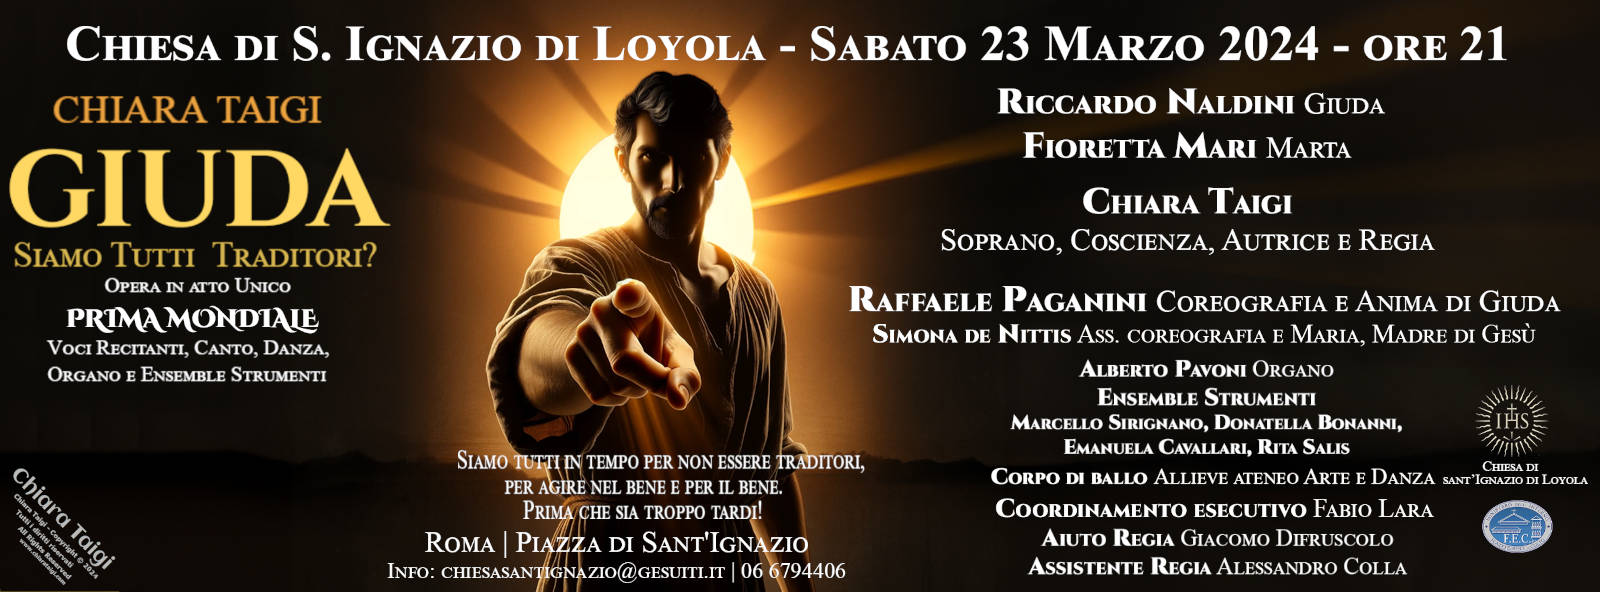 Opera “GIUDA - Siamo Tutti traditori?“ di CHIARA TAIGI, Chiesa Sant'Ignazio di Loyola a Roma il 23 Marzo 2024 ore 21 - APPUNTAMENTO